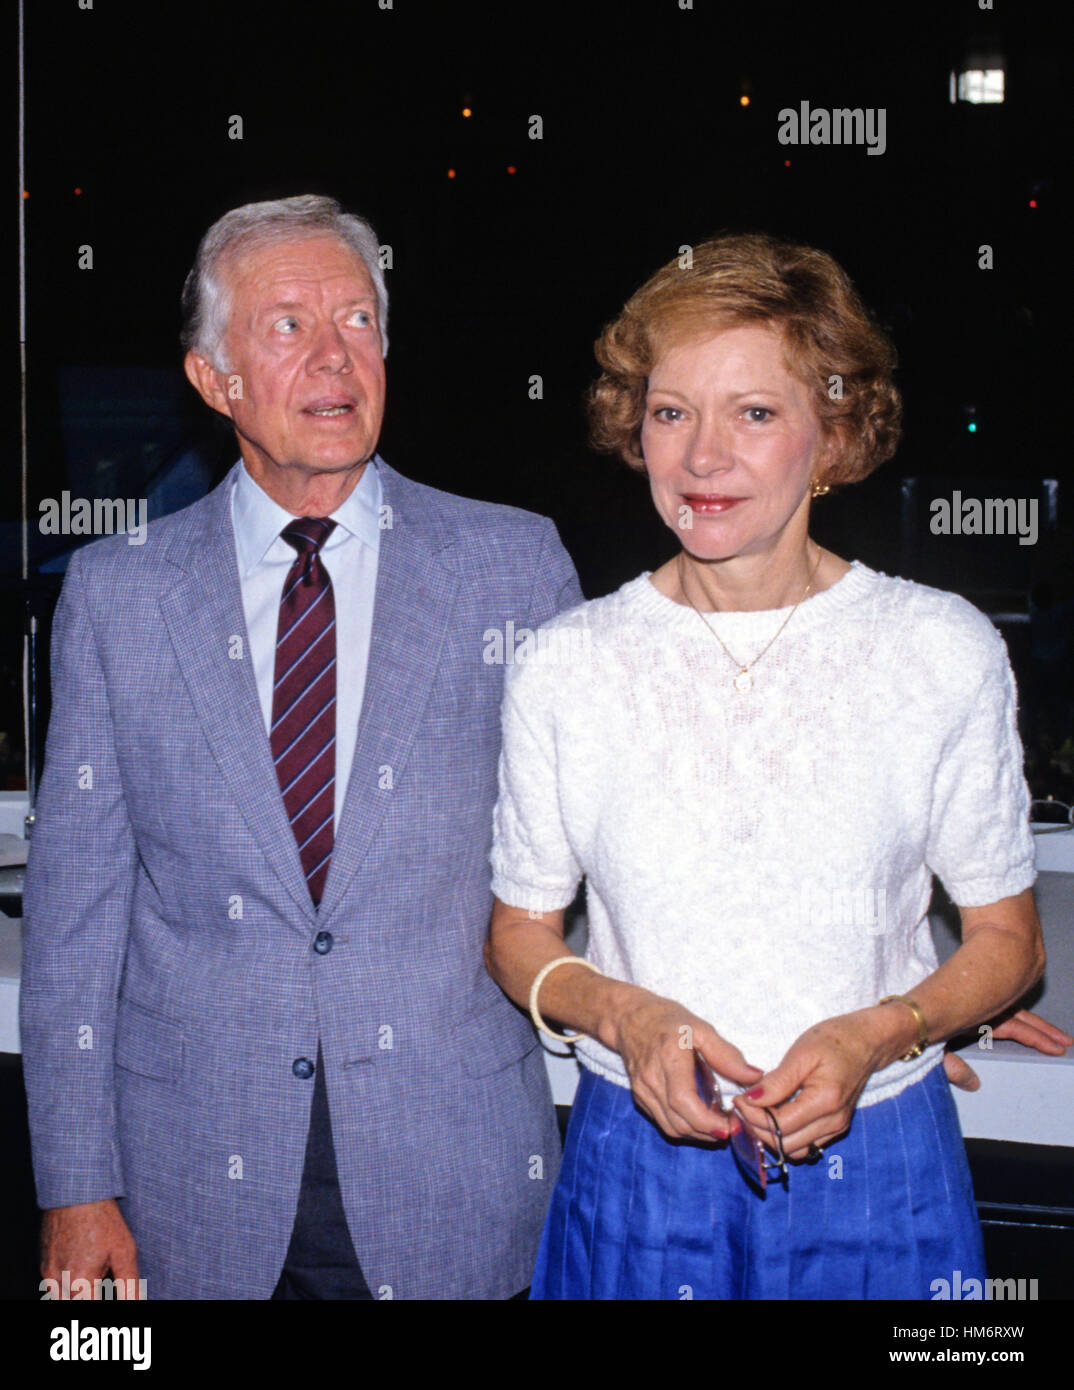 Der ehemalige US-Präsident Jimmy Carter, begleitet von seiner Frau, ehemalige First Lady Rosalynn Carter, besucht die Omni Coliseum in Atlanta, Georgia vor seinem Adressierung der 1988 Democratic National Convention am 18. Juli 1988. Stockfoto